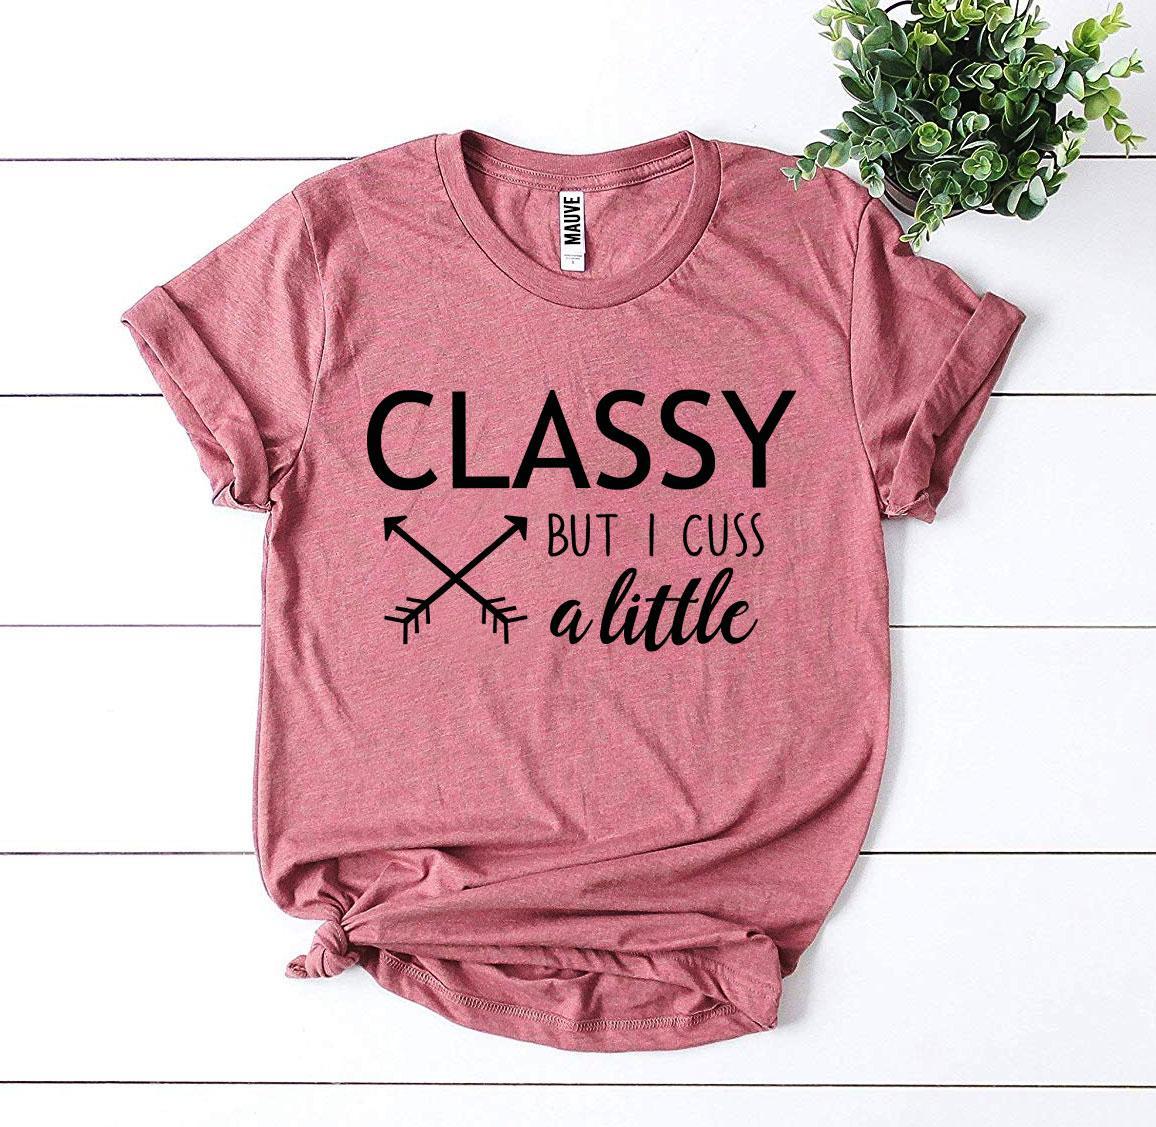 Classy But I Cuss a Little T-shirt Angelwarriorfitness.com